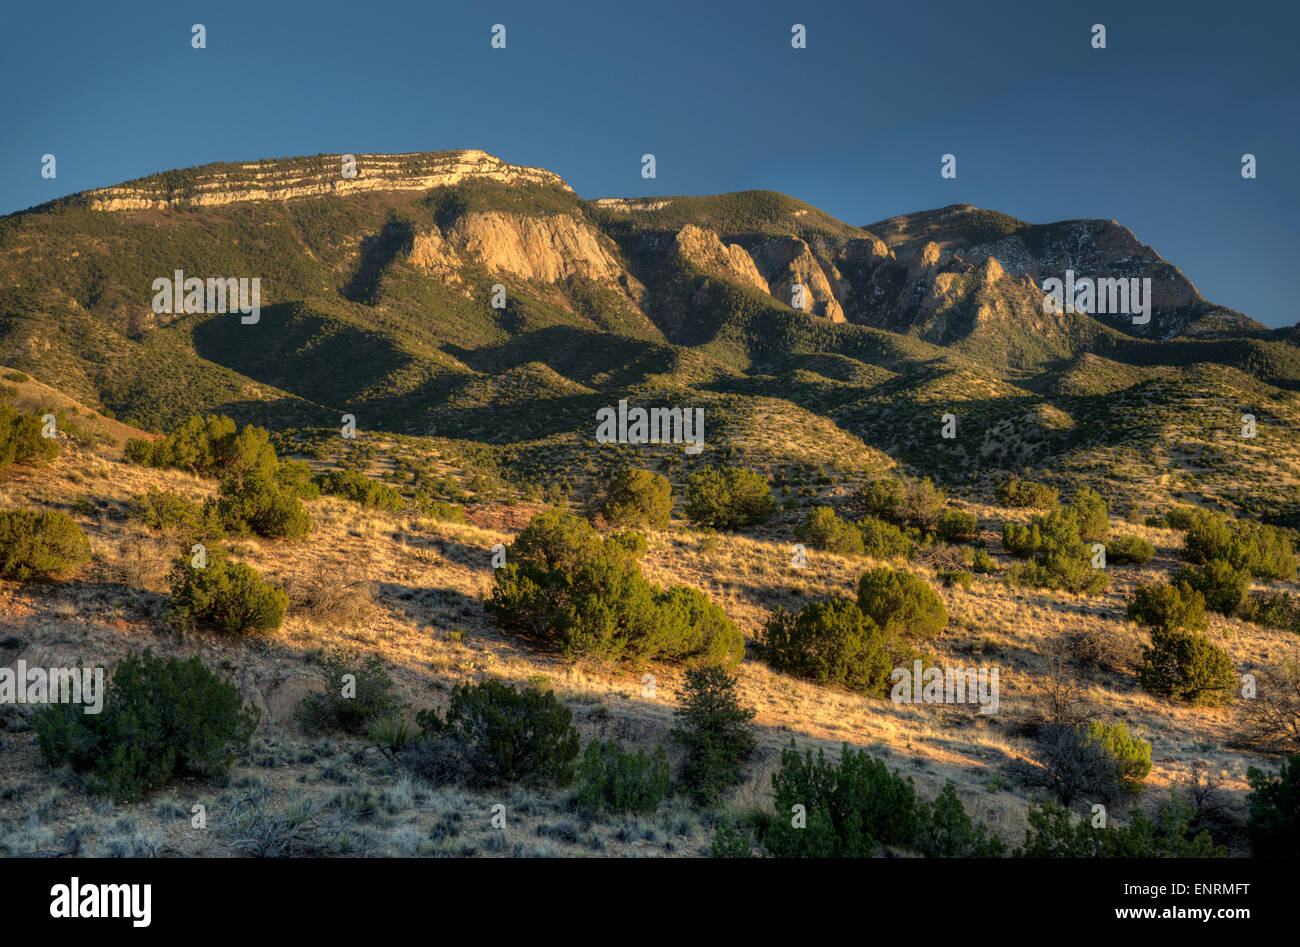 Extremo norte de las montañas Sandia, cara oeste visto desde placitas, NM Foto de stock